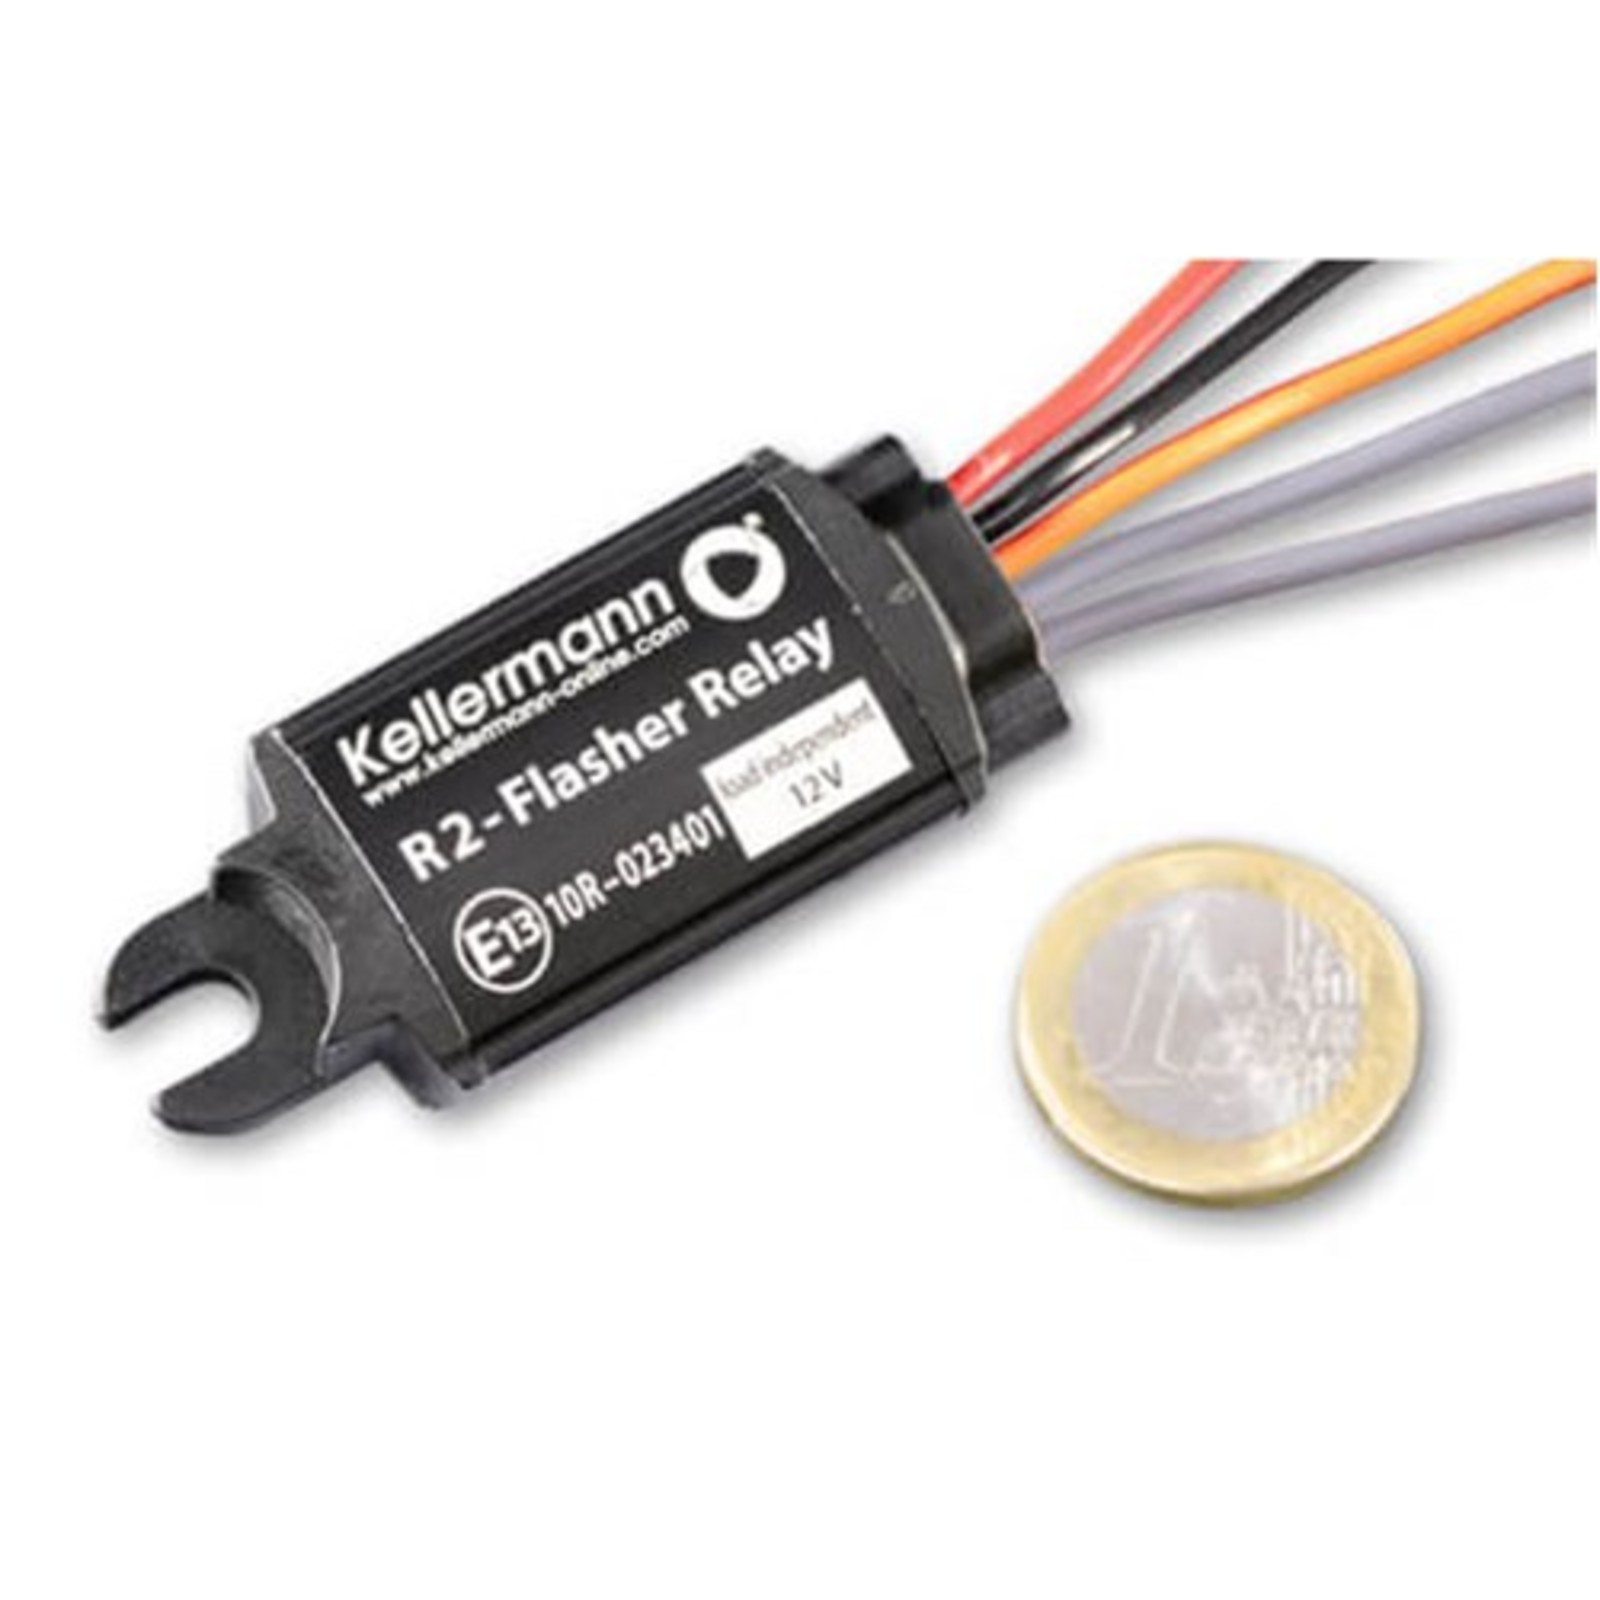 Lastunabhängig Blinkerrelais Blinkgeber LED 12V 0,05-10A 3-Polig